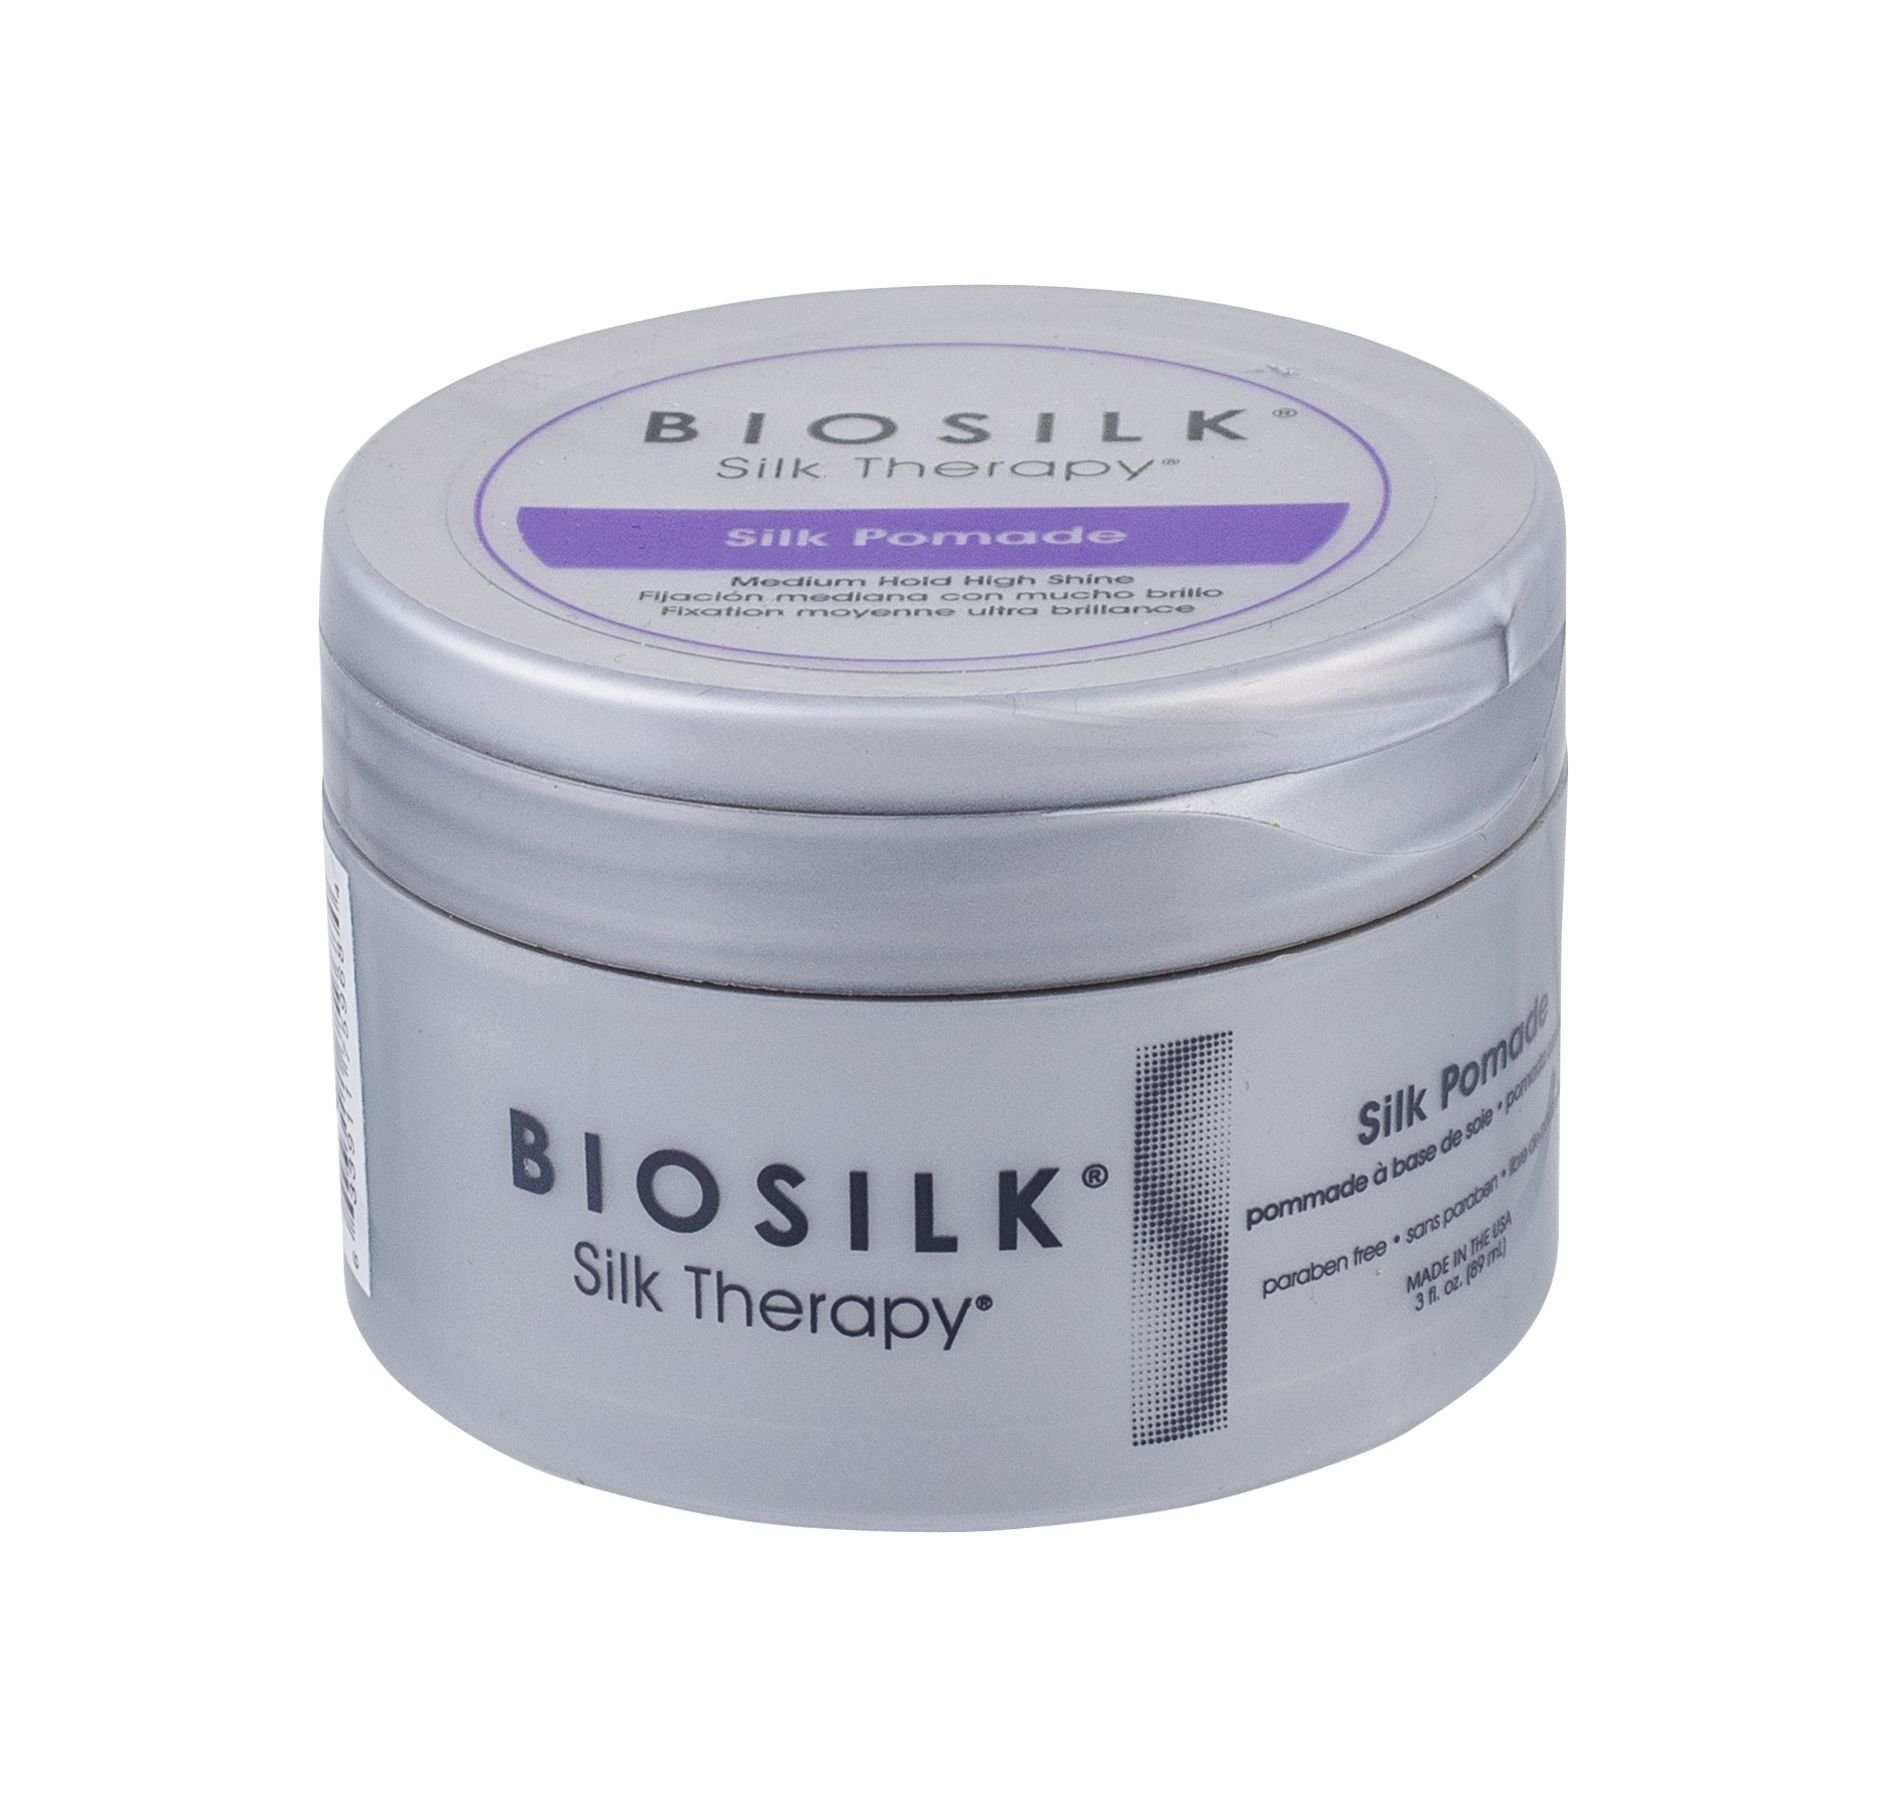 Farouk Systems Biosilk Silk Therapy Silk Pomade plaukų želė